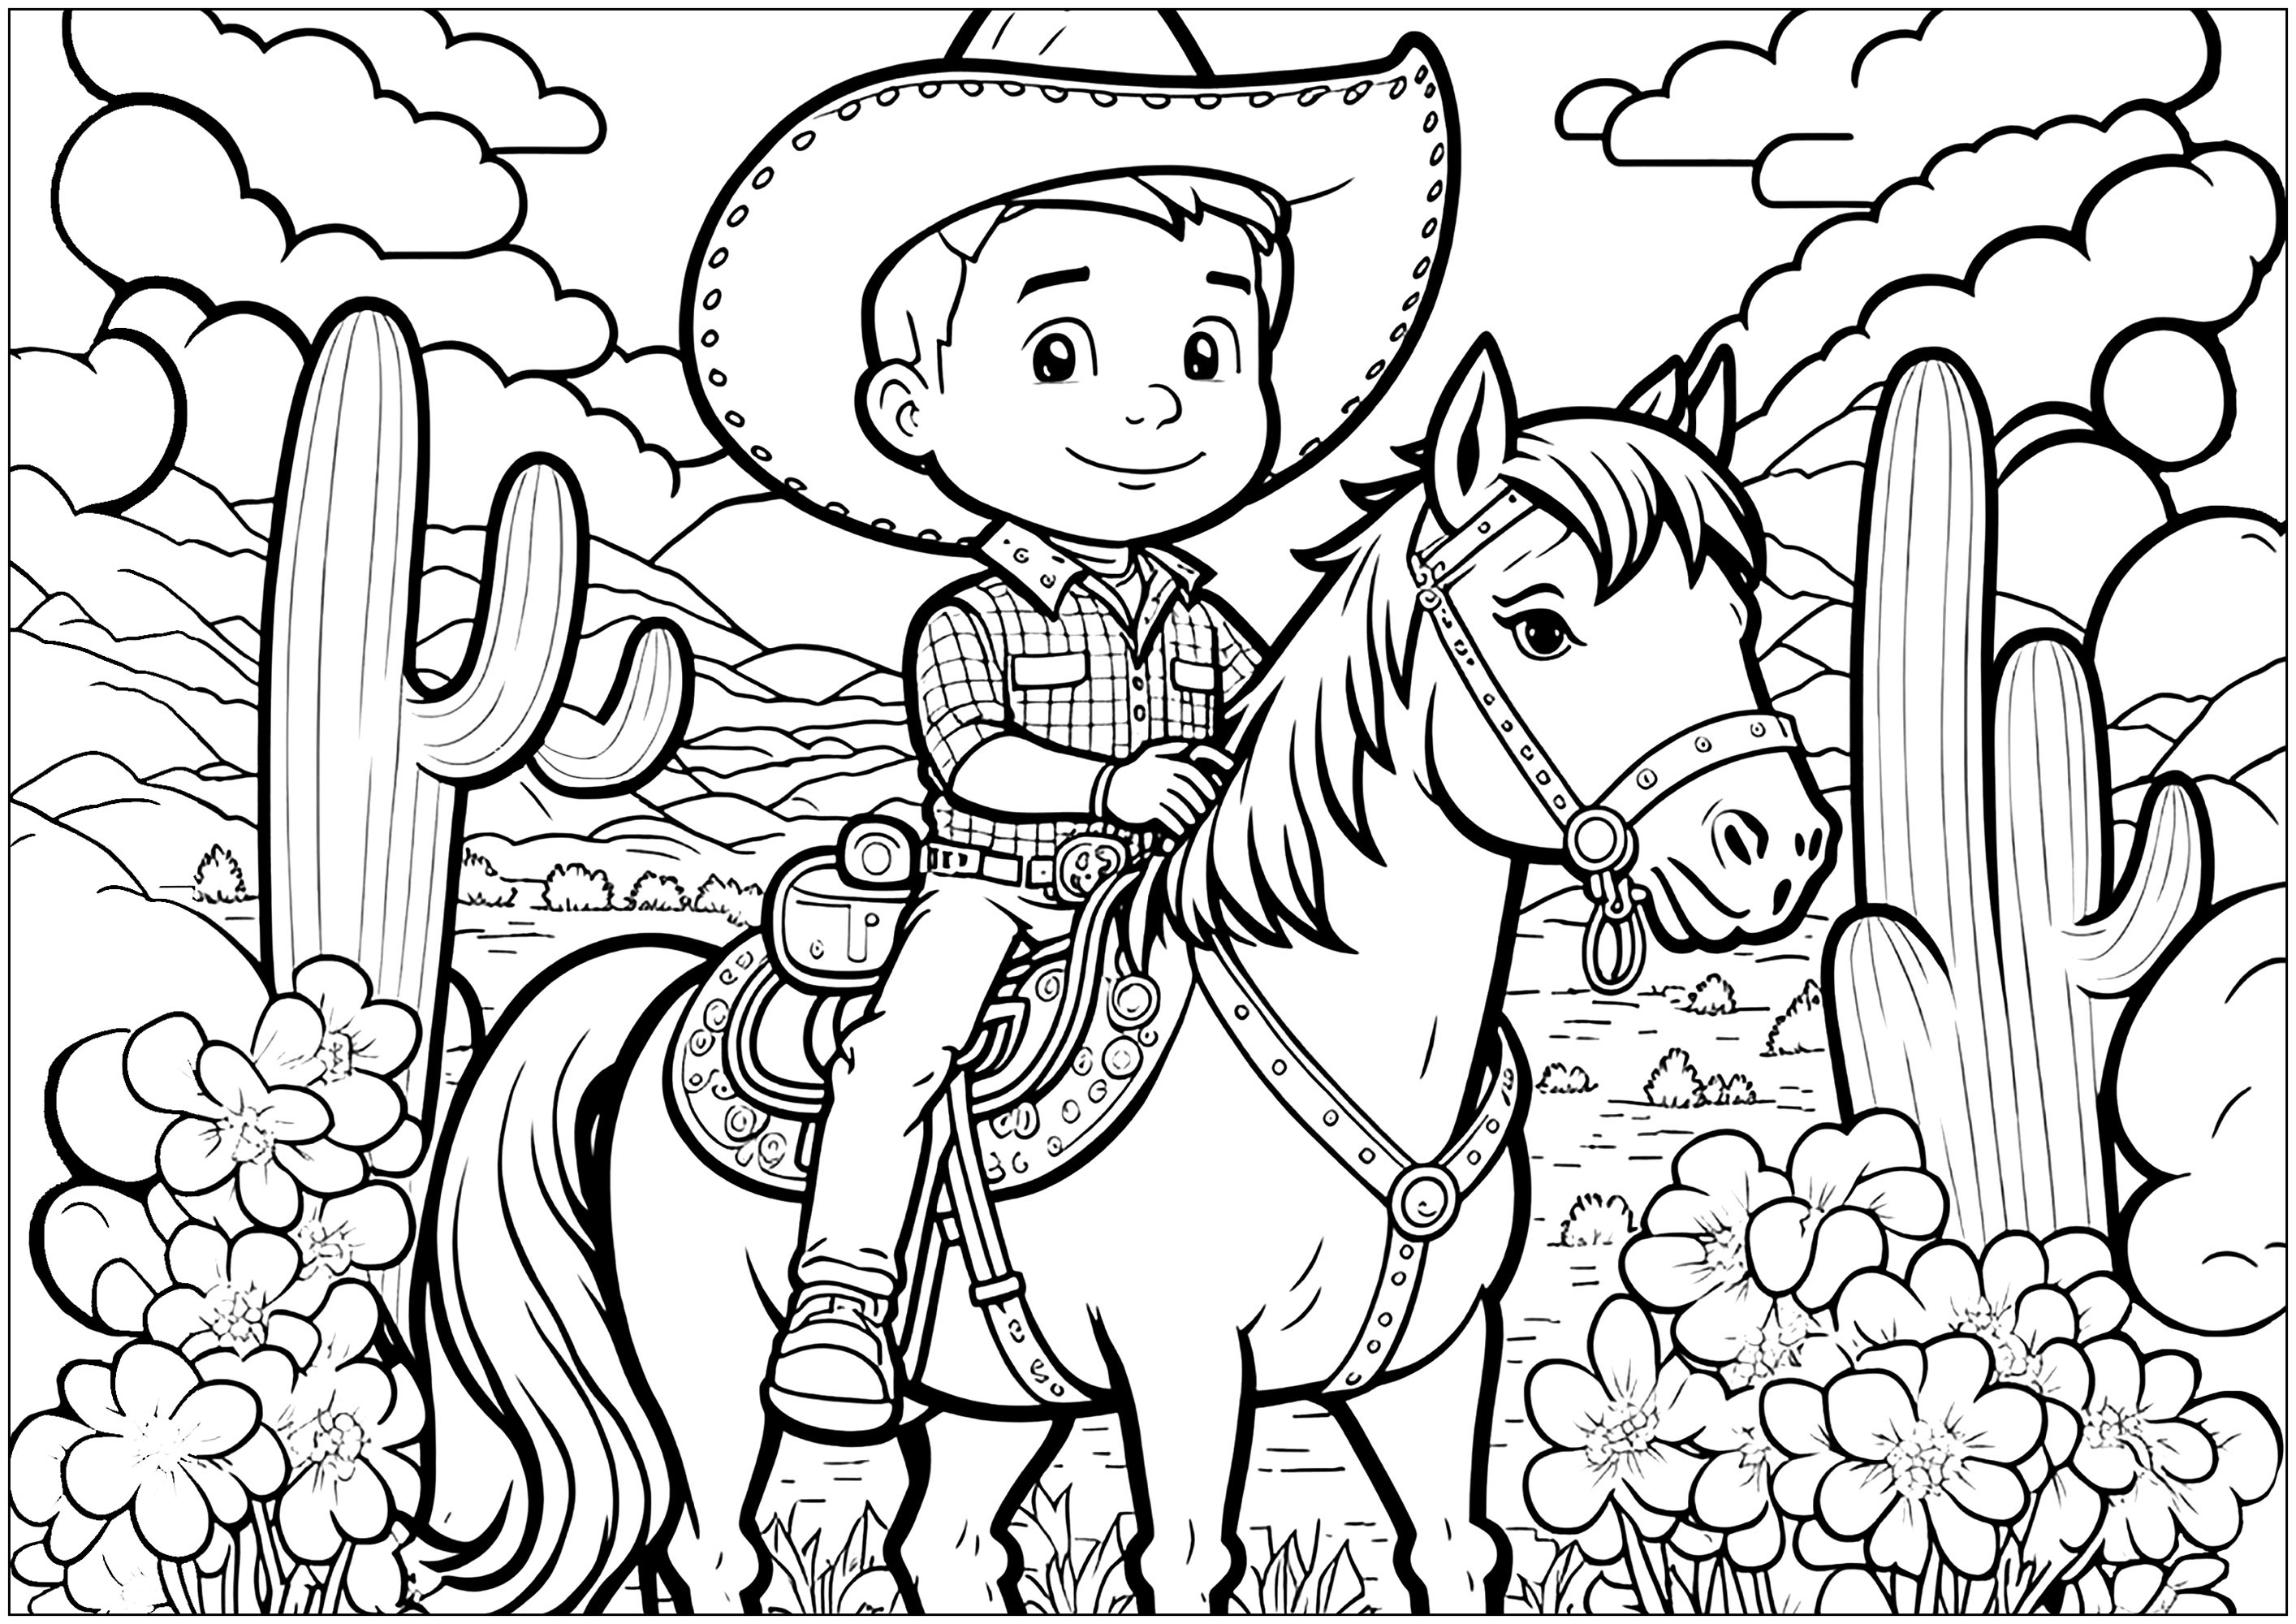 Un joven vaquero a caballo, con un rico fondo (montañas, cactus, nubes, etc.).